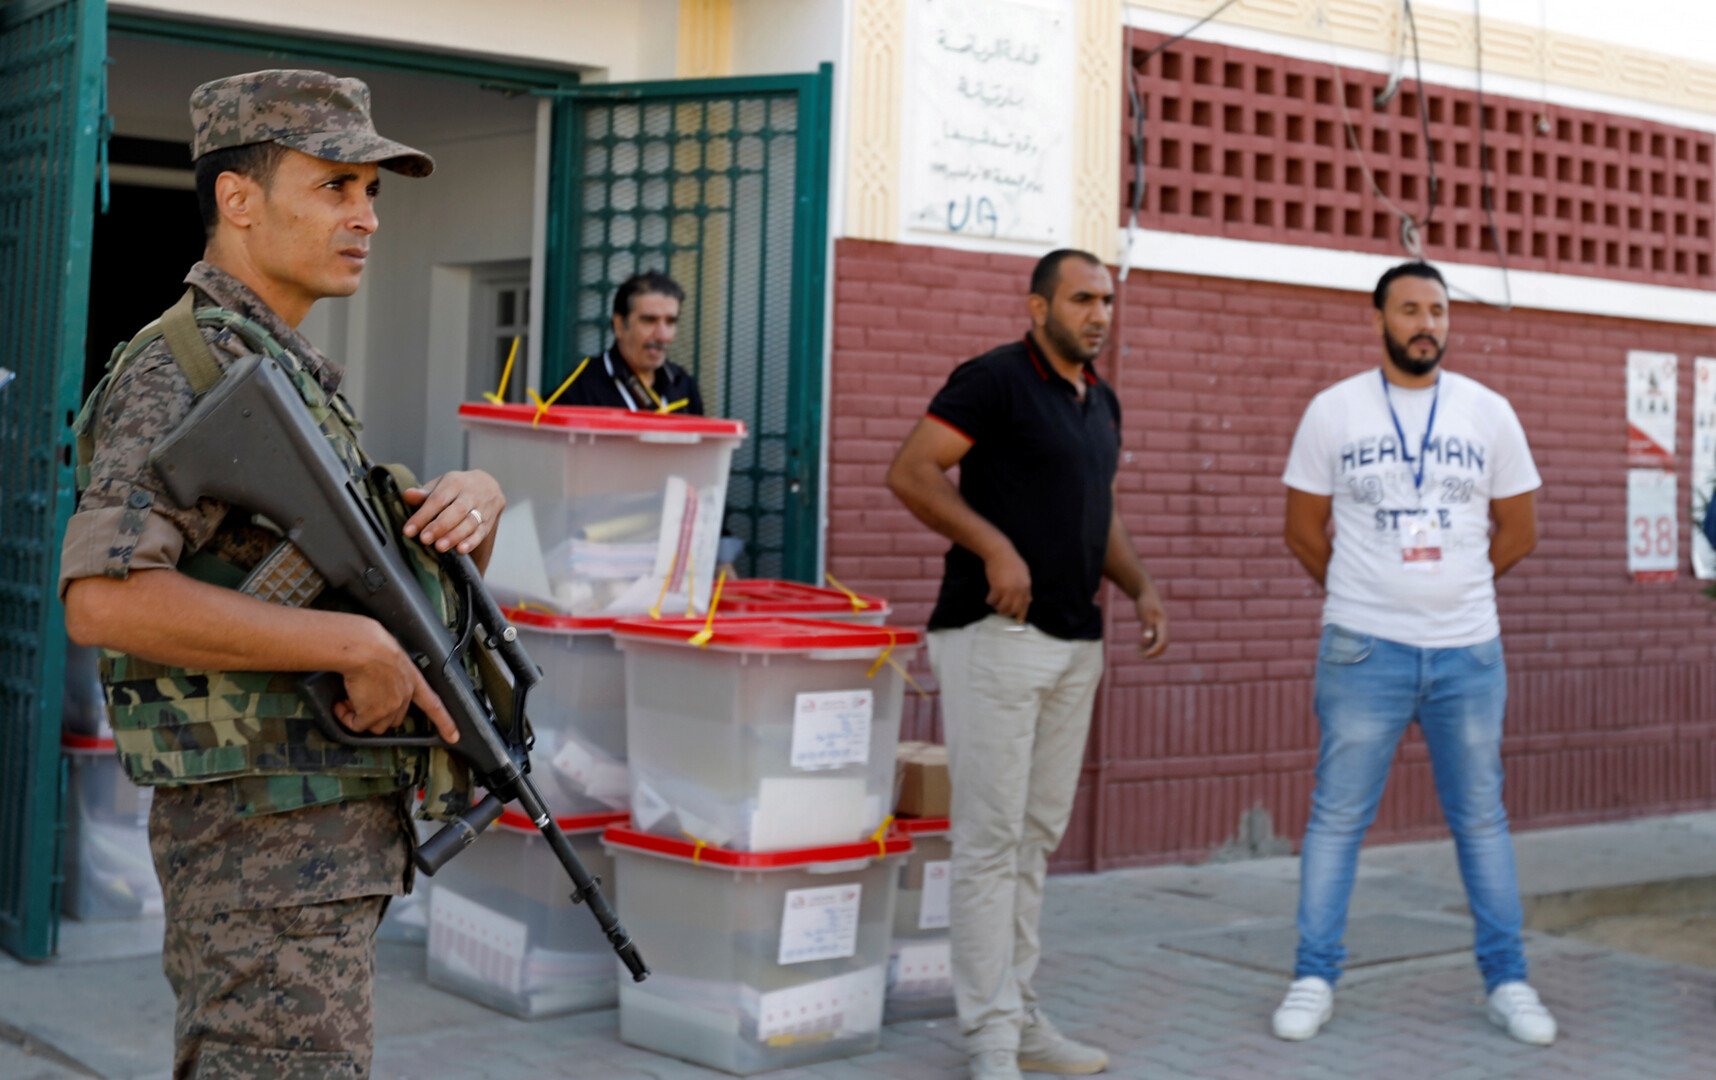 التونسيون ينتخبون ثالث برلمان لهم بعد الثورة